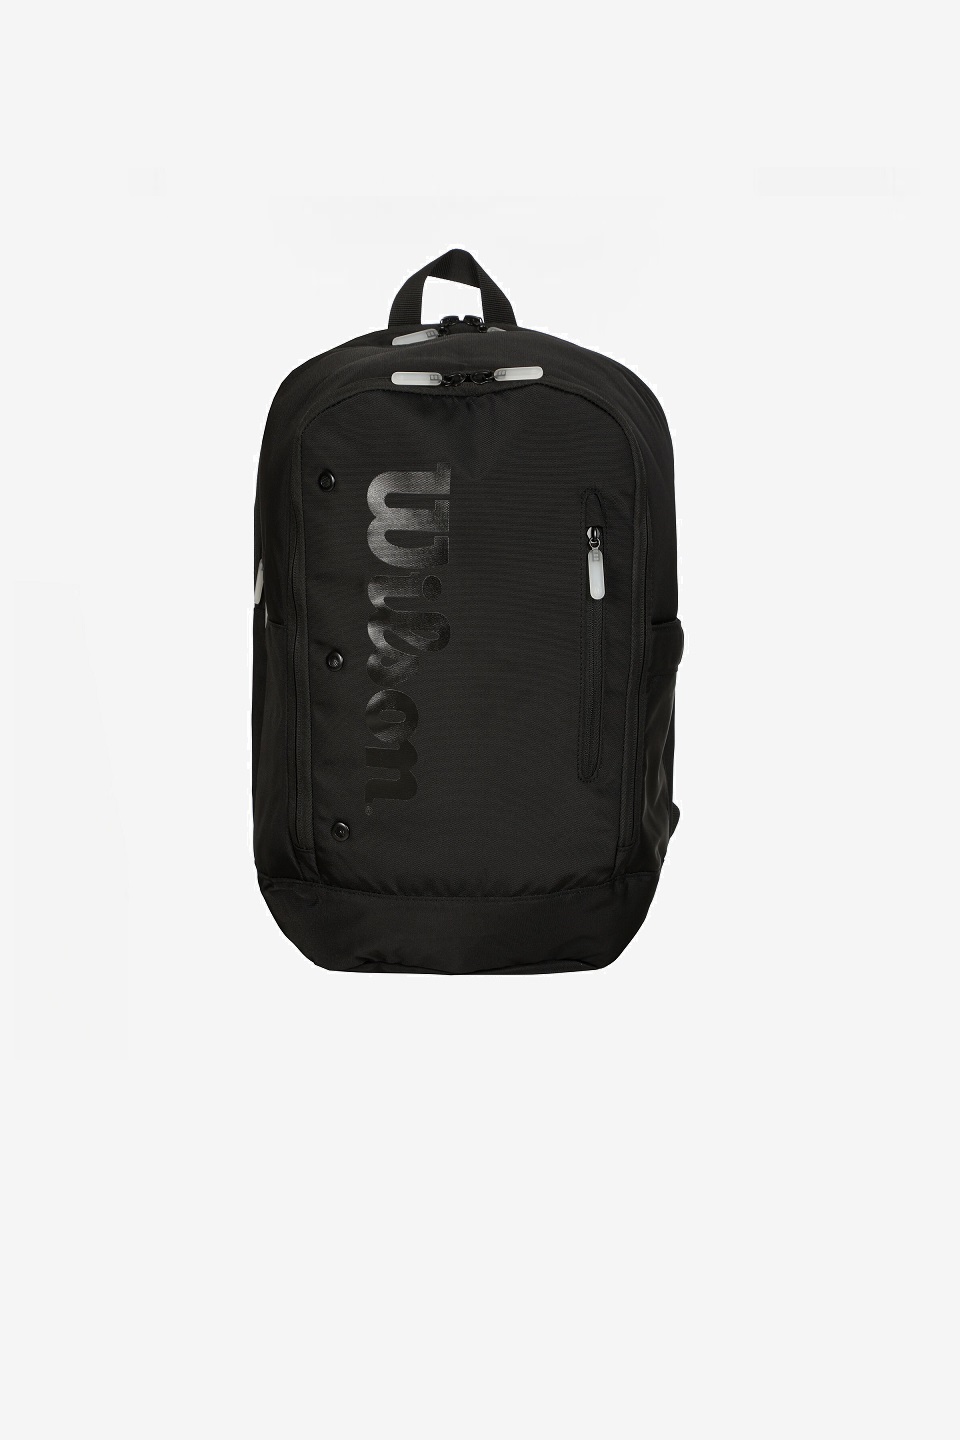 Wilson Tour Noir Backpack